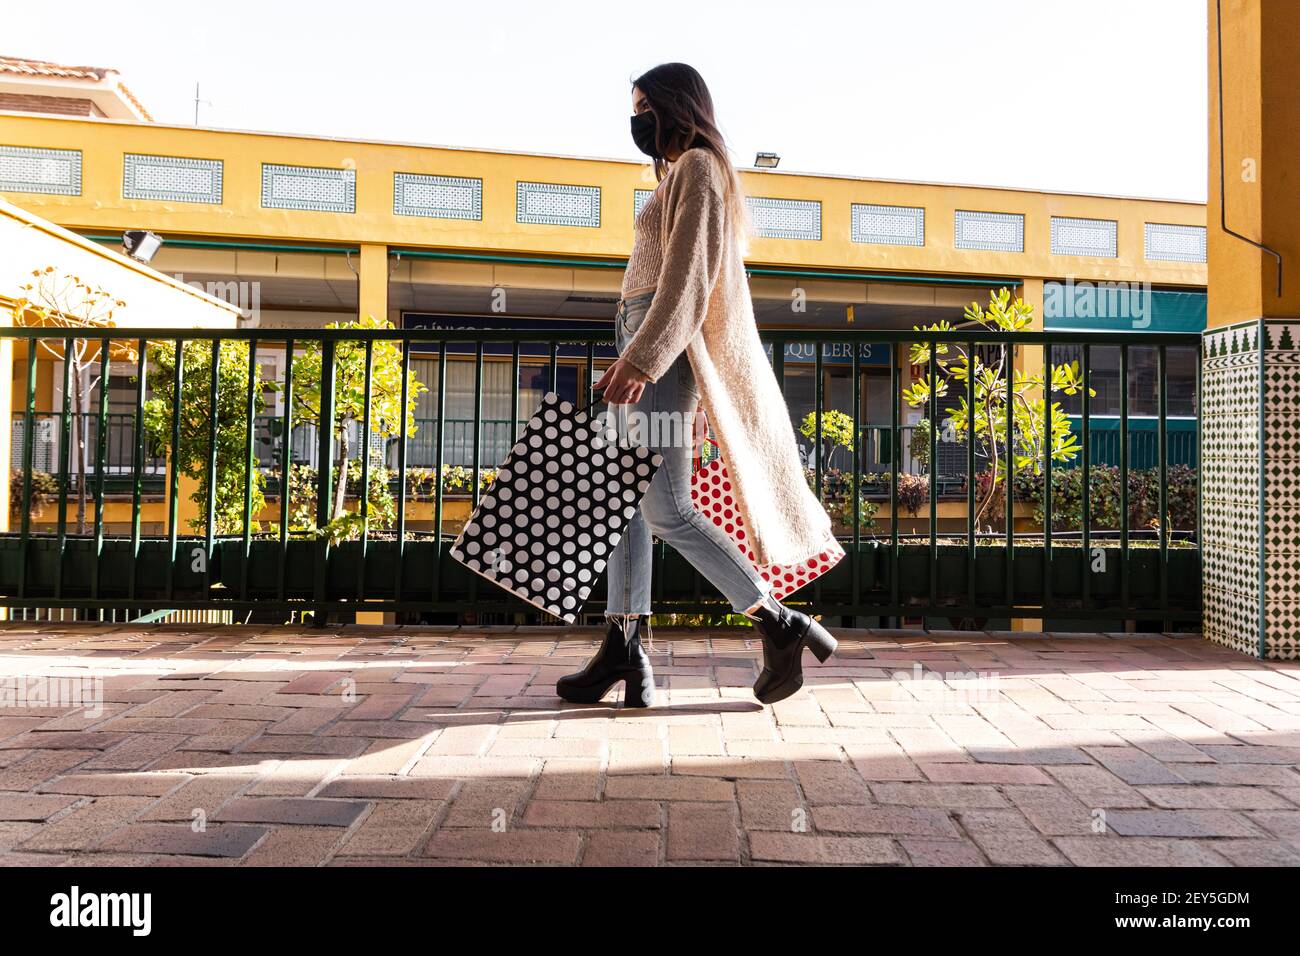 Spanische Brünette Mädchen mit Gesichtsmaske zu Fuß mit Einkaufstaschen in einem Einkaufszentrum. Stockfoto